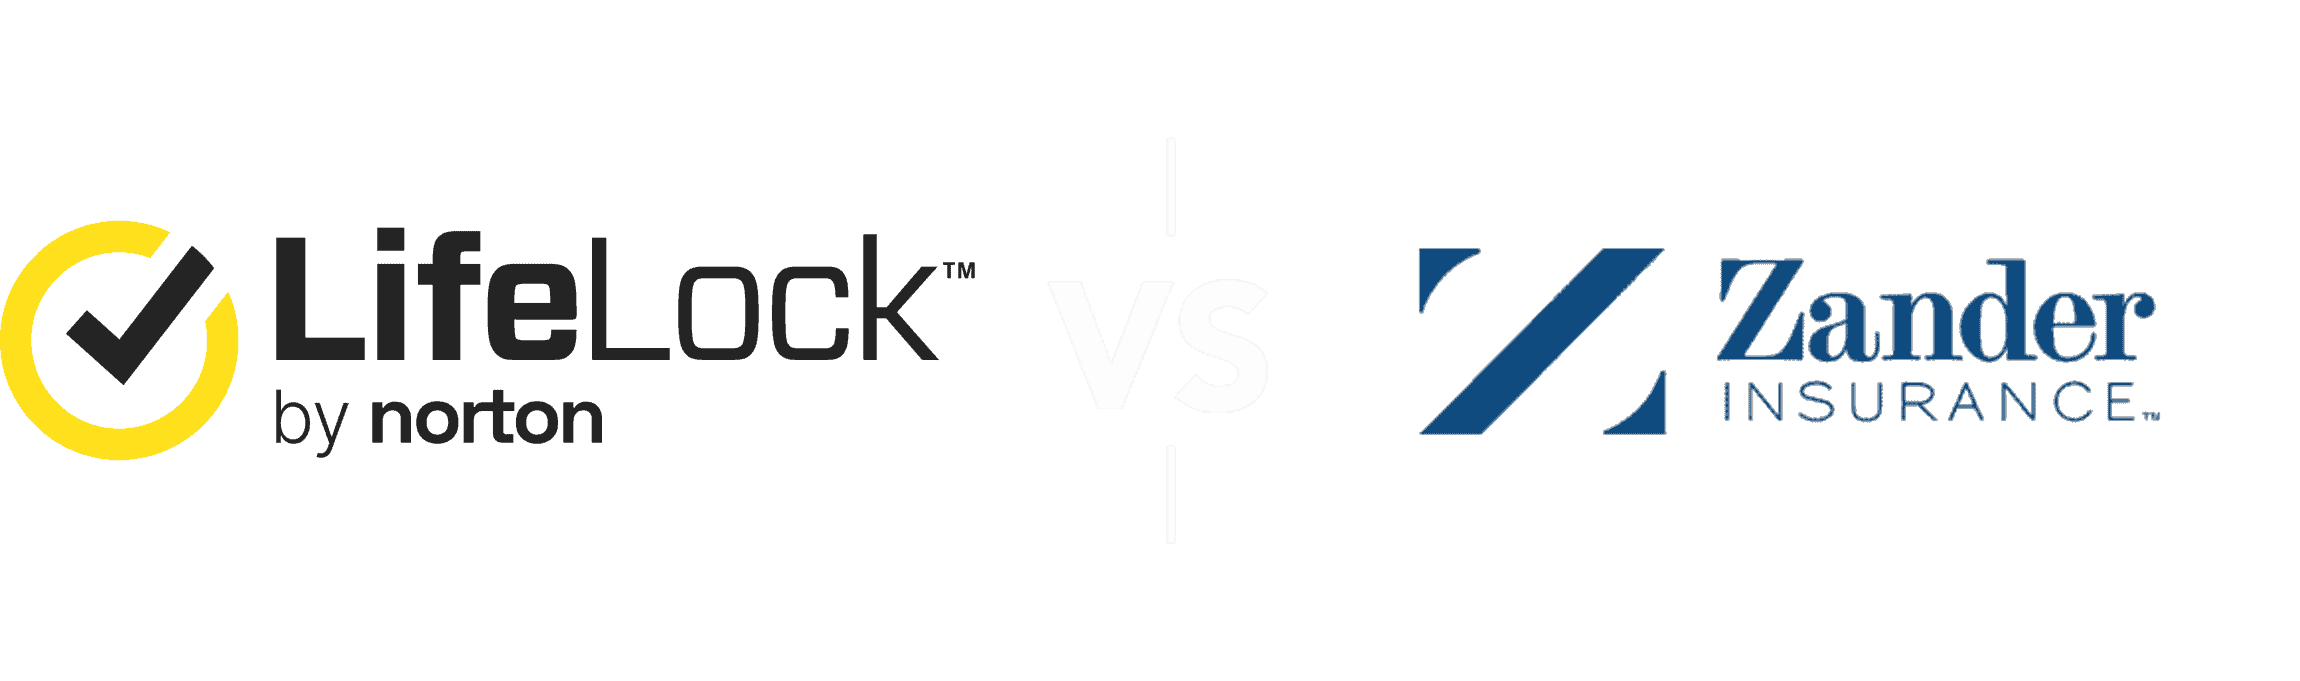 NortonLifeLock vs Zander Comparison